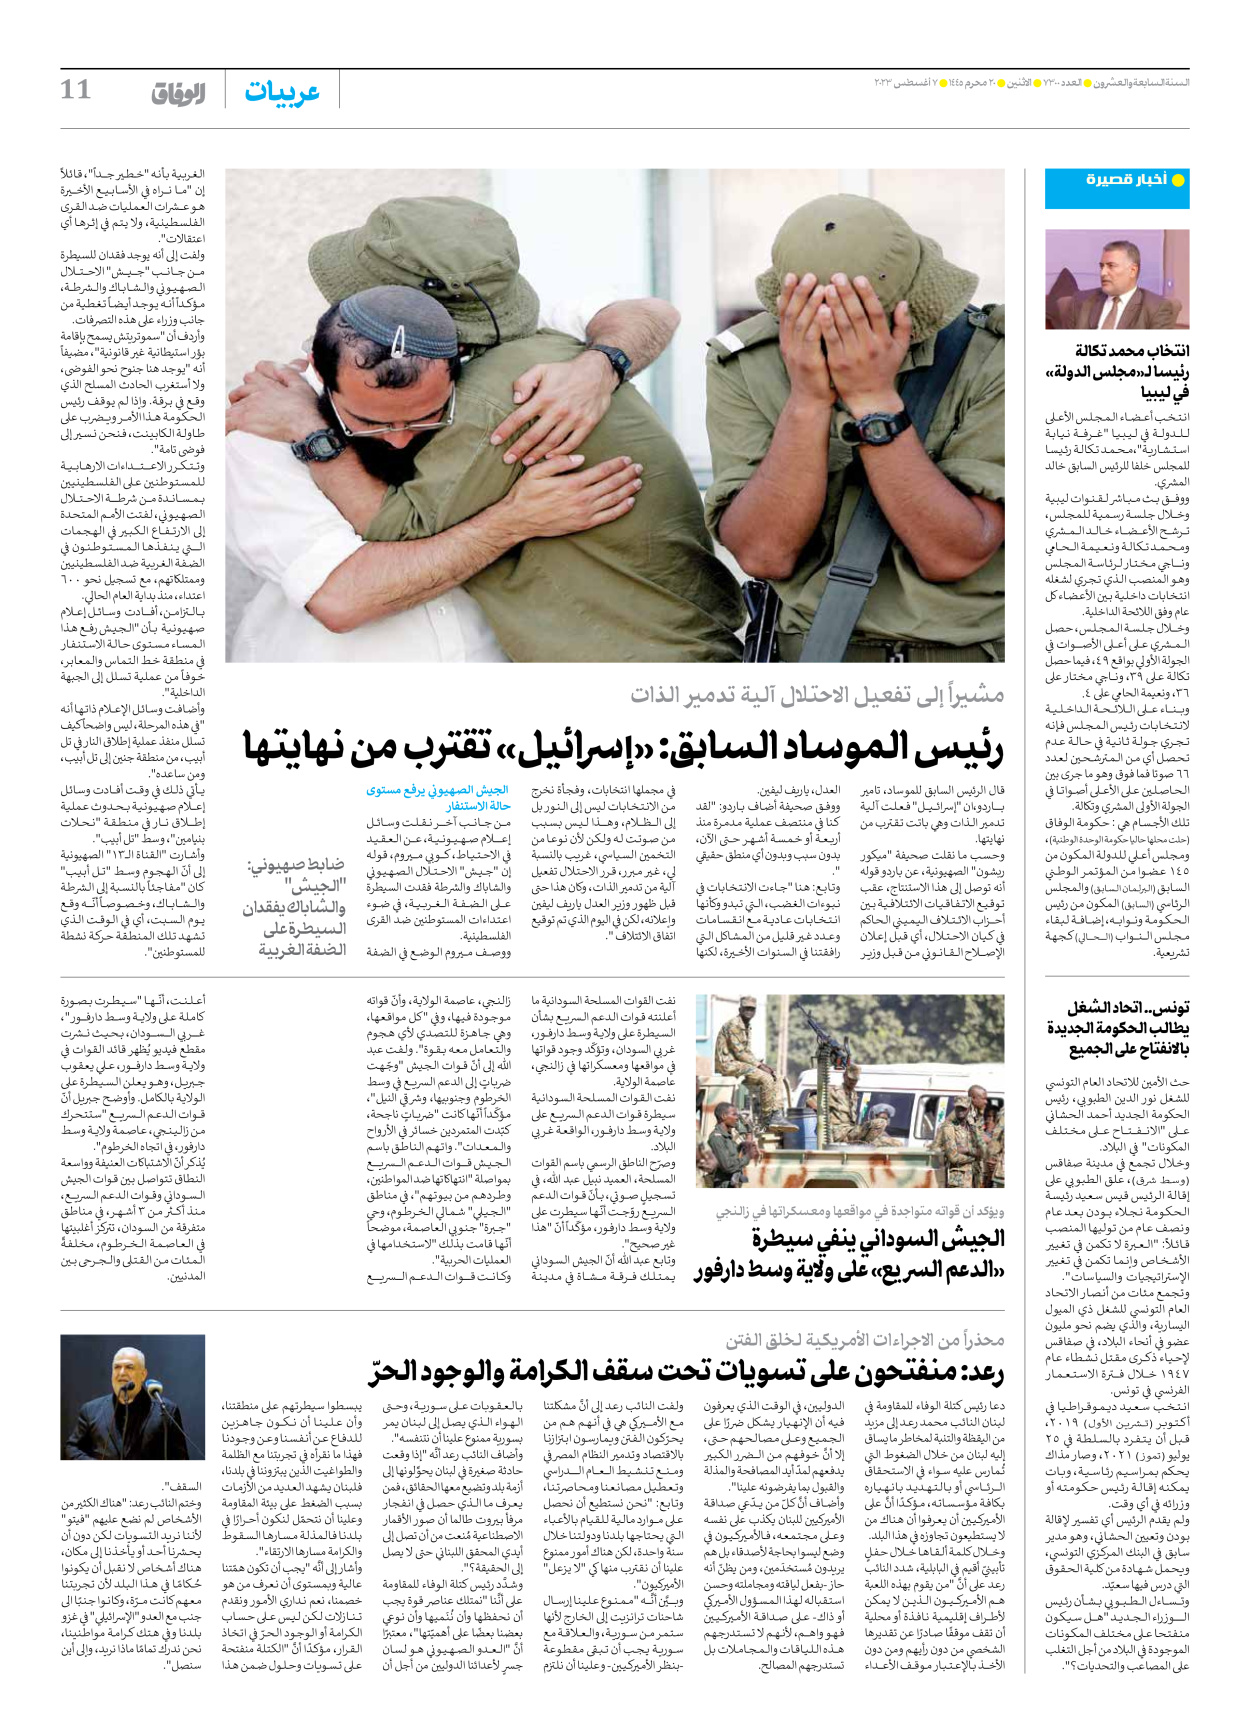 صحیفة ایران الدولیة الوفاق - العدد سبعة آلاف وثلاثمائة - ٠٧ أغسطس ٢٠٢٣ - الصفحة ۱۱